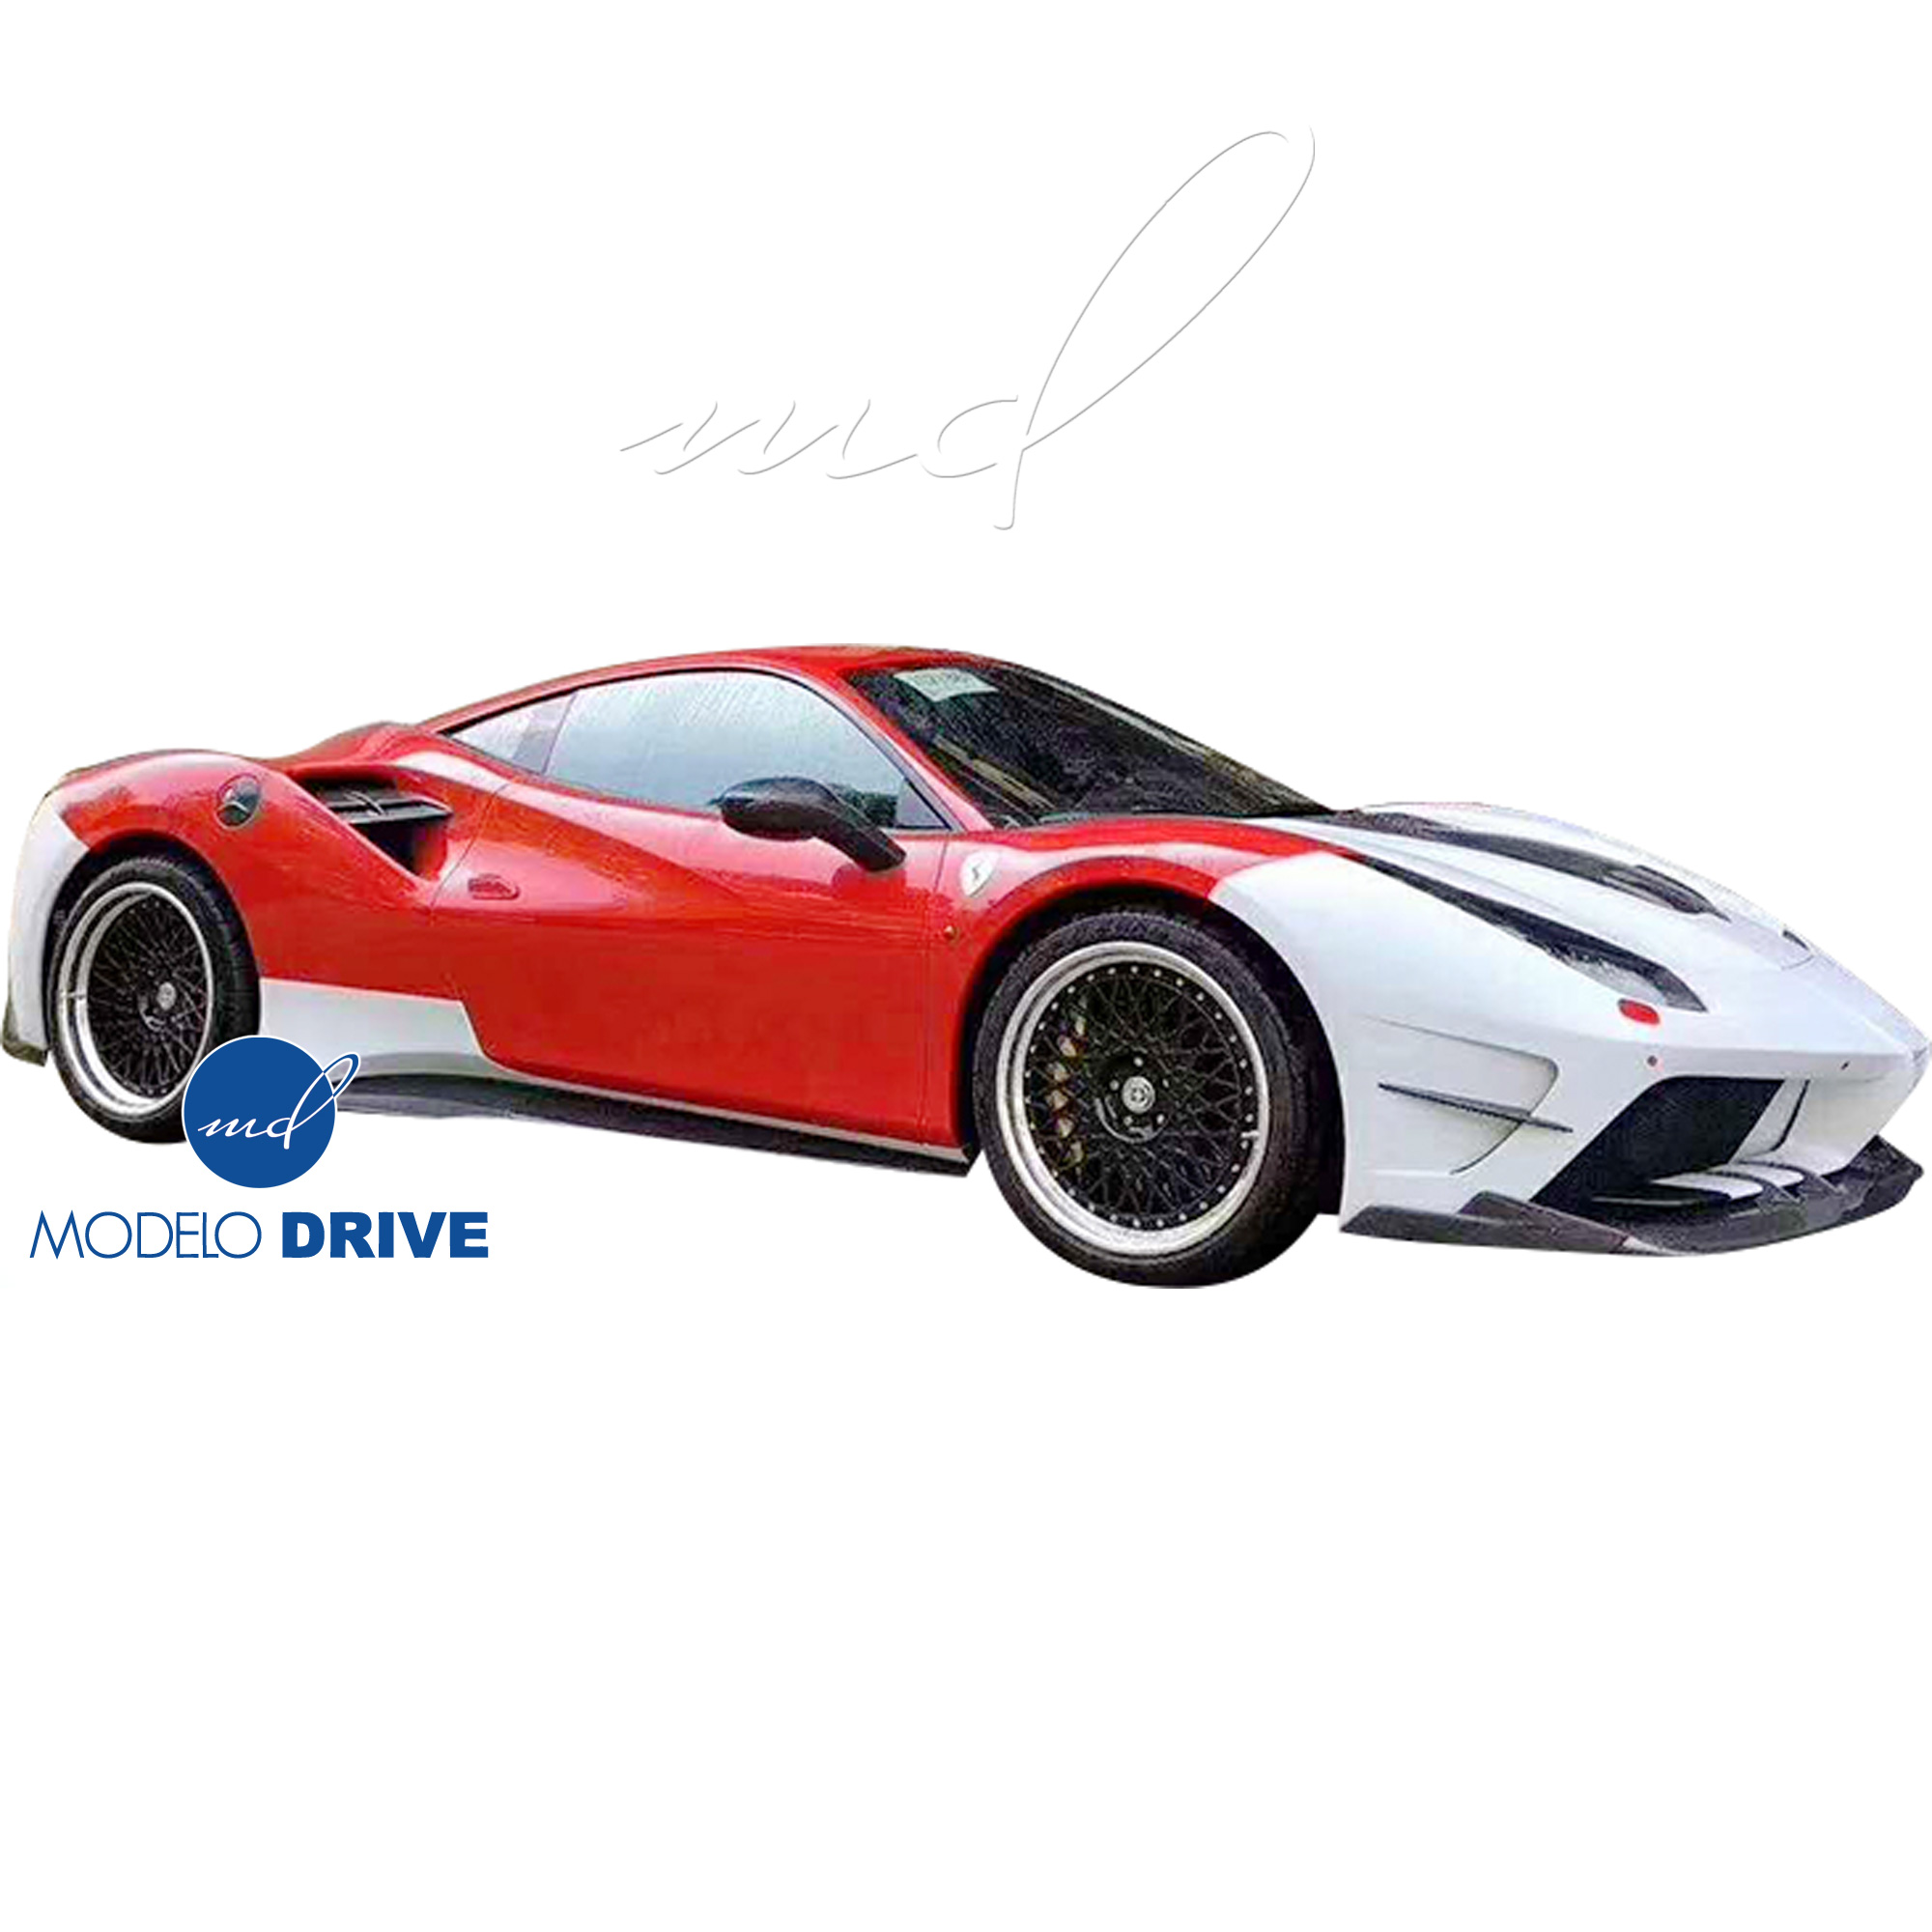 ModeloDrive Partial Carbon Fiber MDES Front Bumper w Splitter > Ferrari 488 GTB F142M 2016-2019 - Image 6